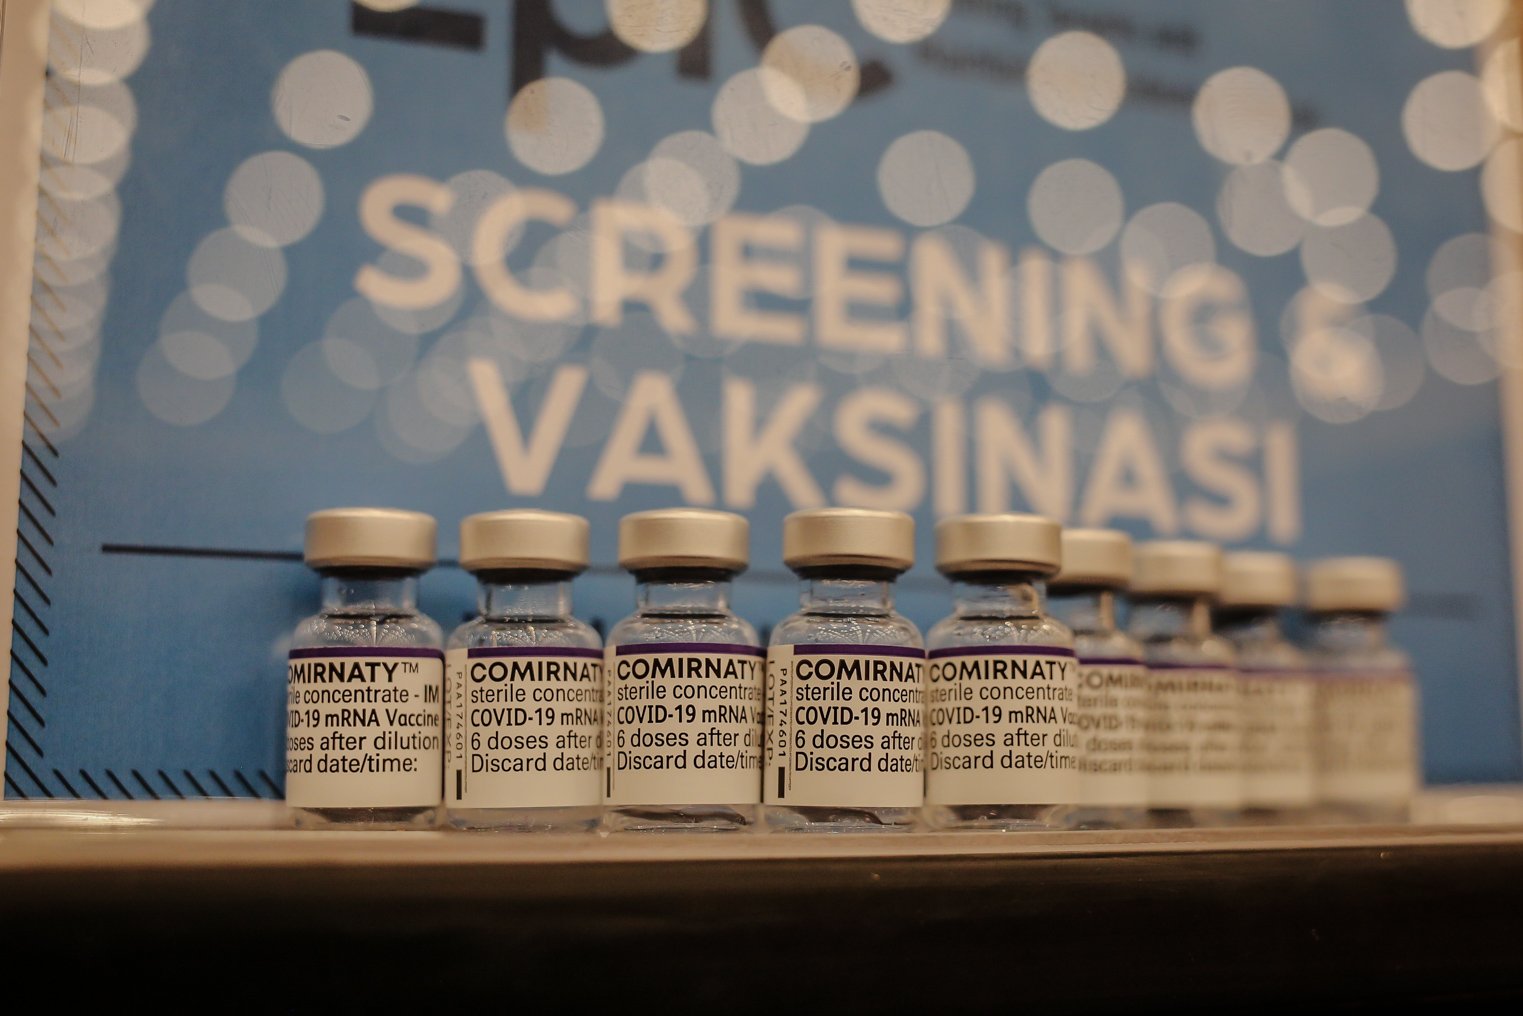 Cairan vaksin booster dijejerkan saat penyuntikan vaksin di Mal Kota Kasablanka, Jakarta, Rabu (26/1/2022). Vaksin Booster yang disediakan adalah vaksin jenis Pfizer, berlaku bagi peserta yang sudah vaksin lengkap hingga dosis ke-2 dengan jenis vaksin Sinovac atau AstraZeneca, telah menerima tiket vaksin ke-3 pada aplikasi PeduliLindungi, dan berusia 18 tahun ke atas.